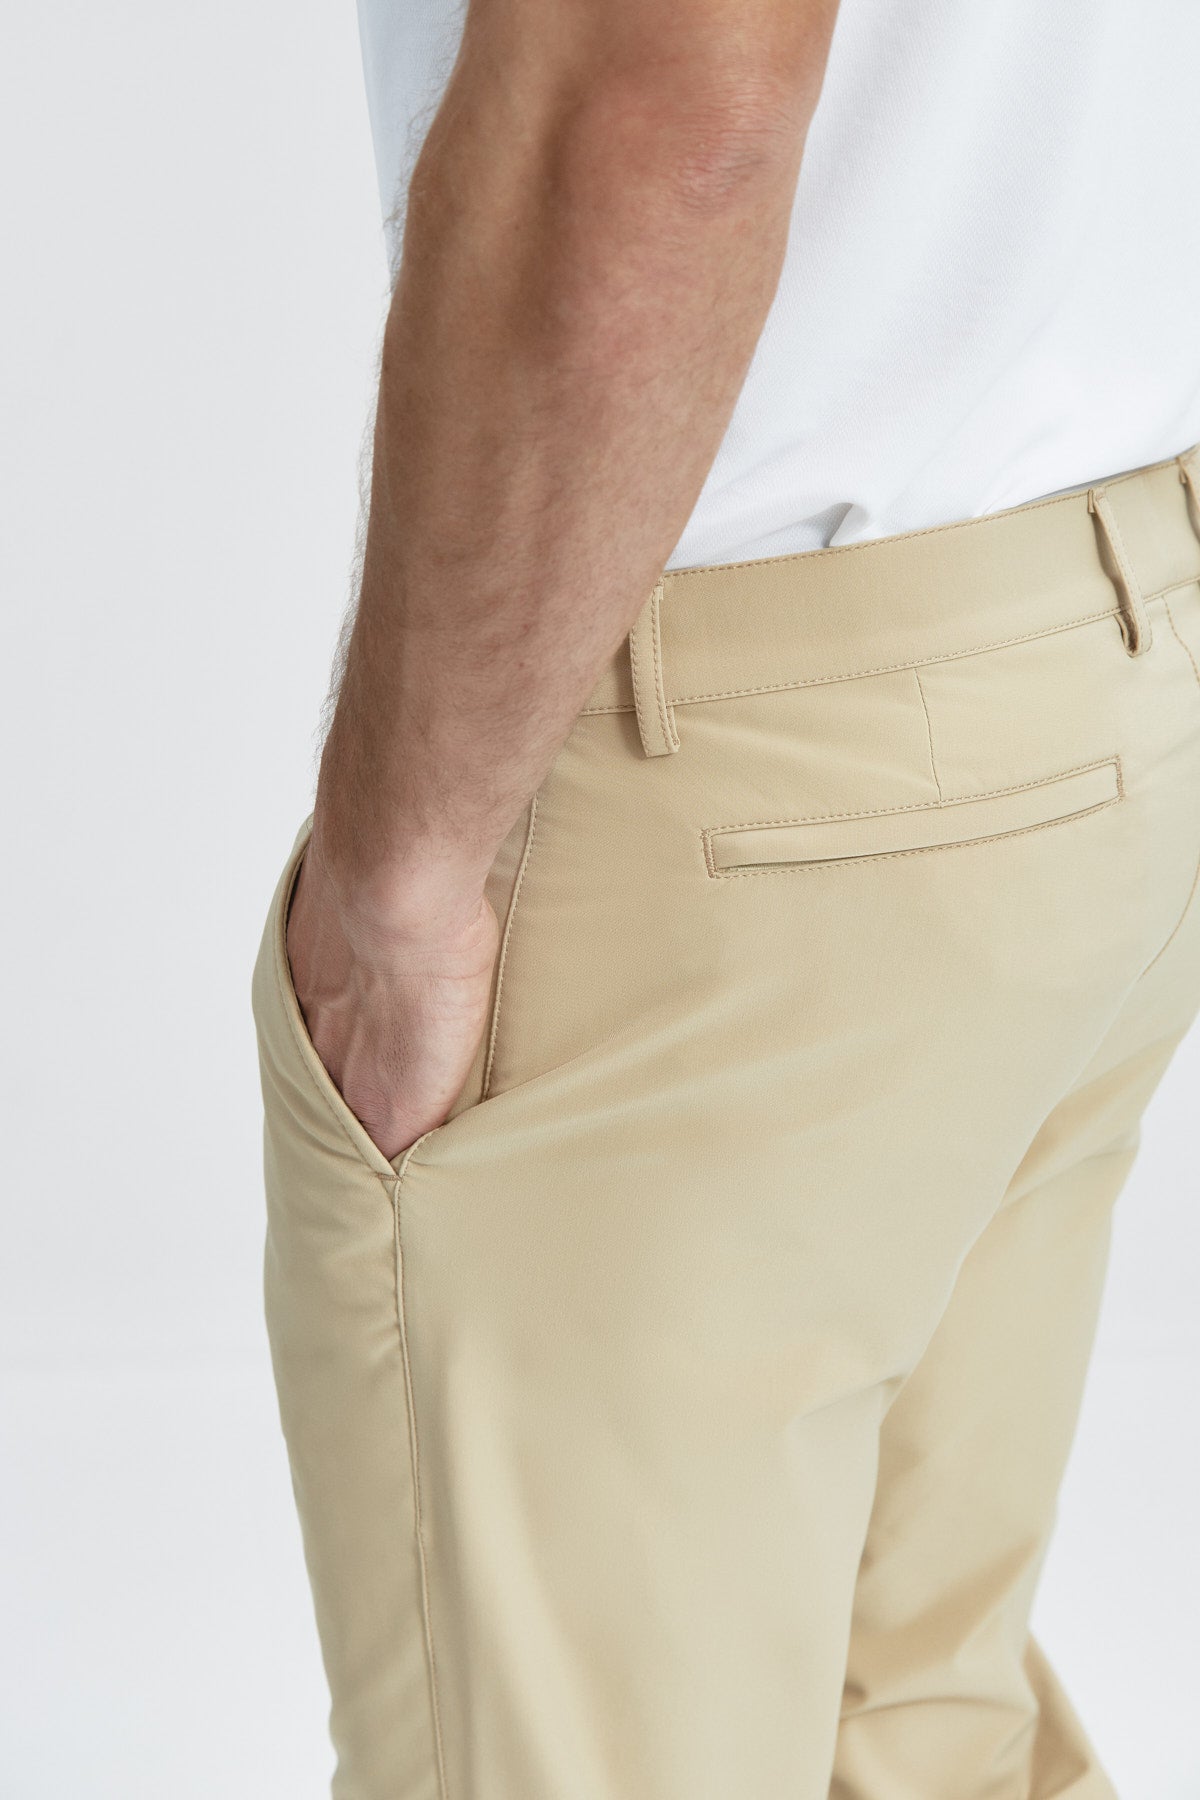 Pantalón para hombre beige: Pantalón chino slim beige para hombre con tecnología termorreguladora Coolmax. Foto detalle.